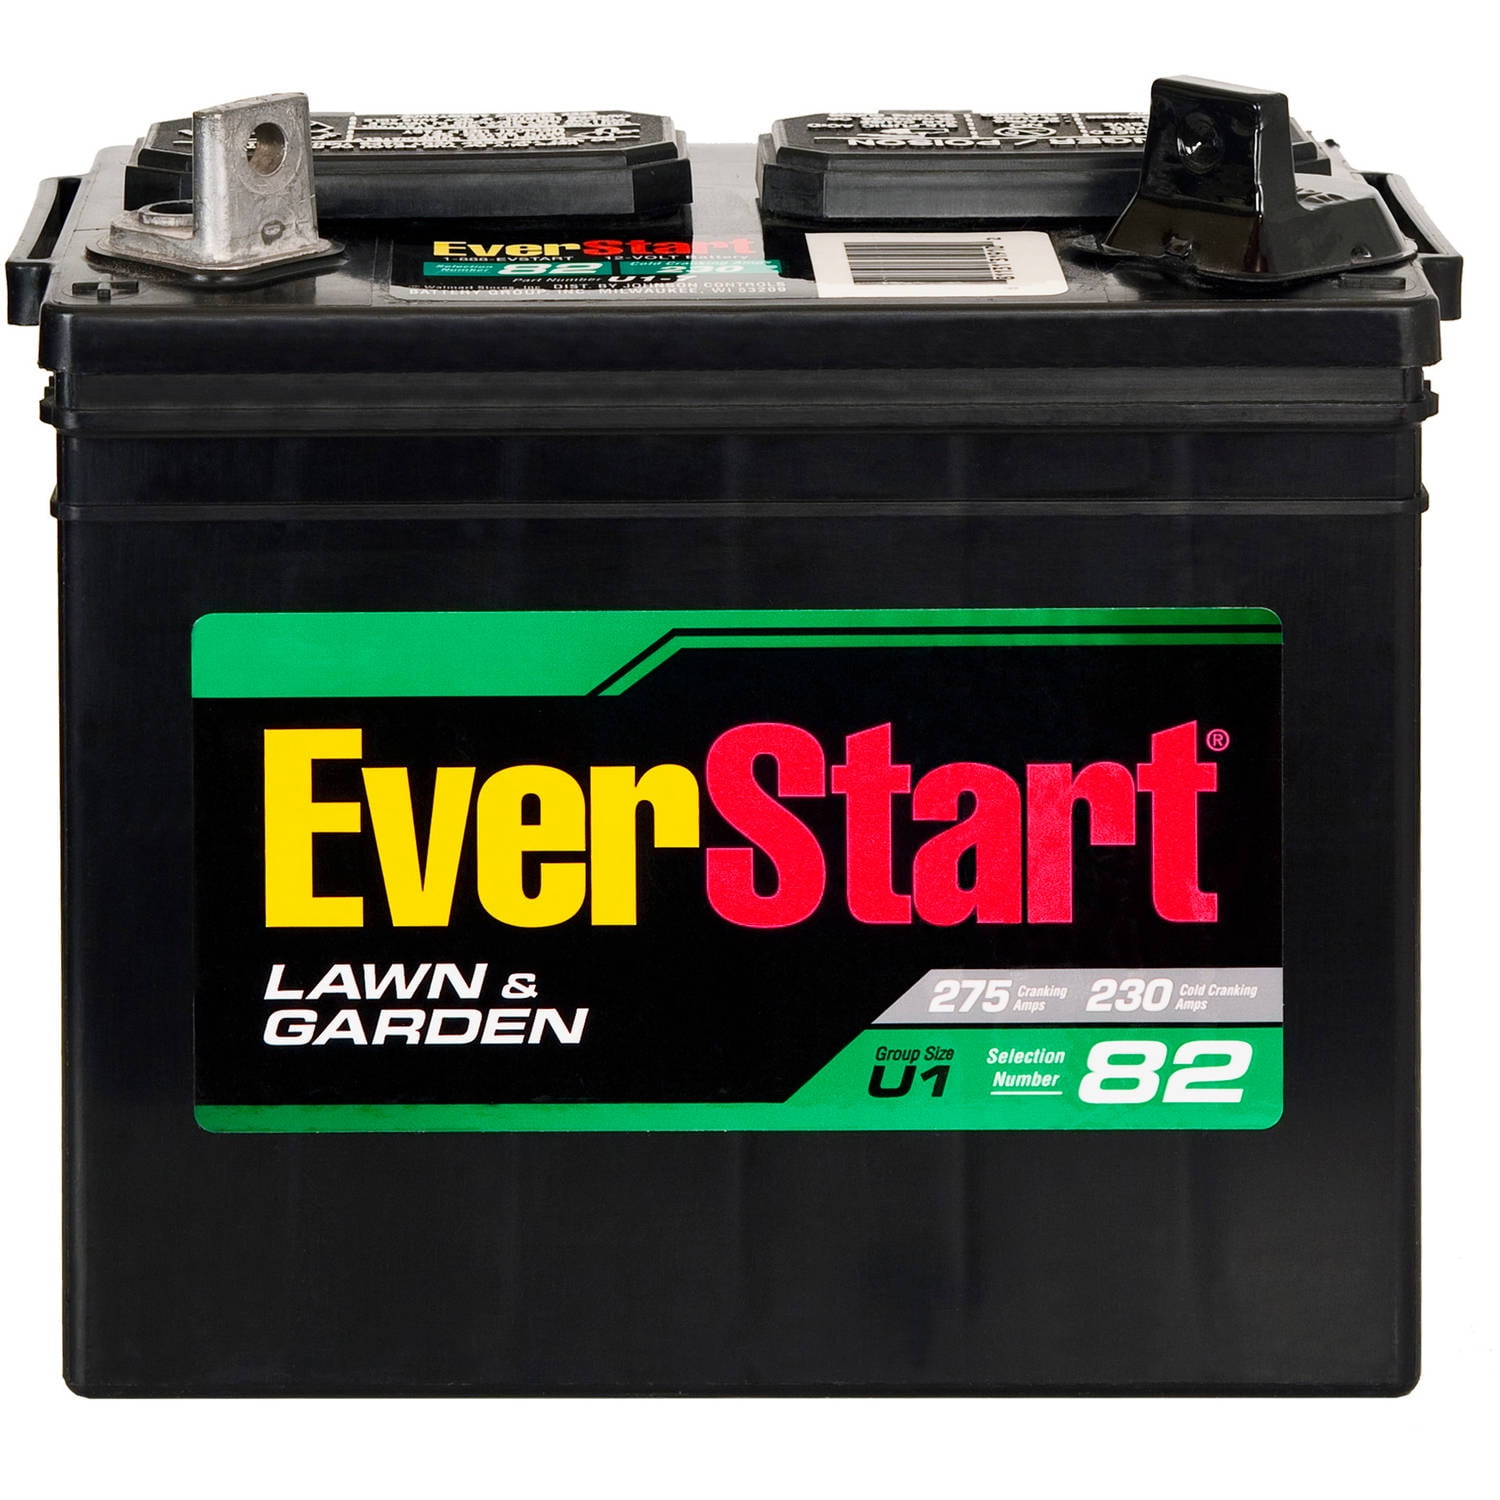 Everstart Battery Conversion Chart